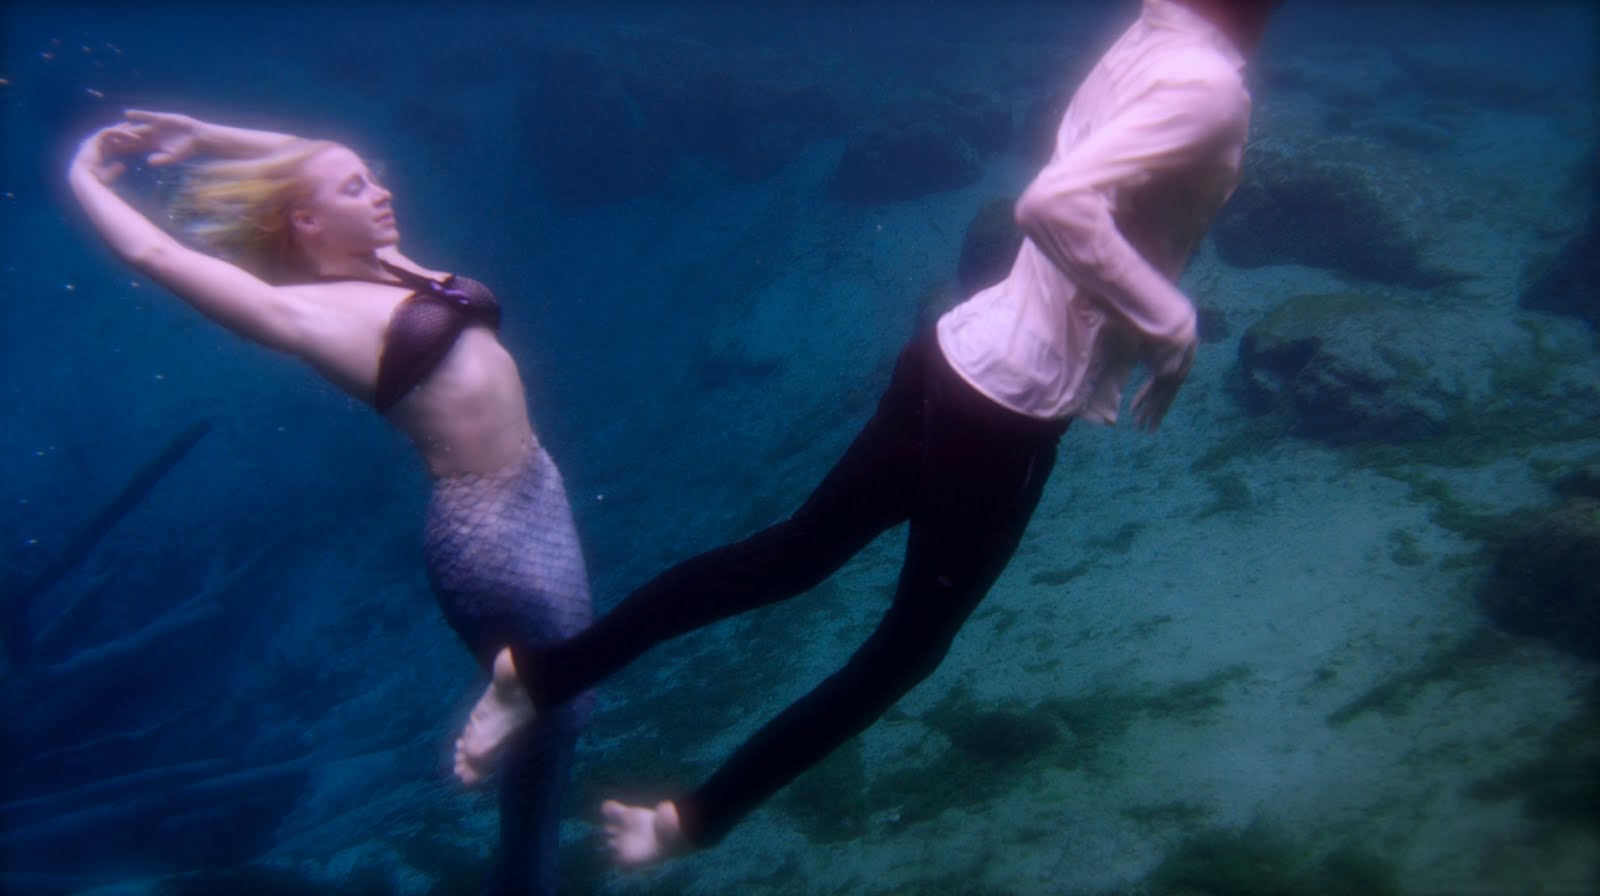 Mermaid Melissa: Underwater Performer amp; Pro Free Diver: New Mermaid 